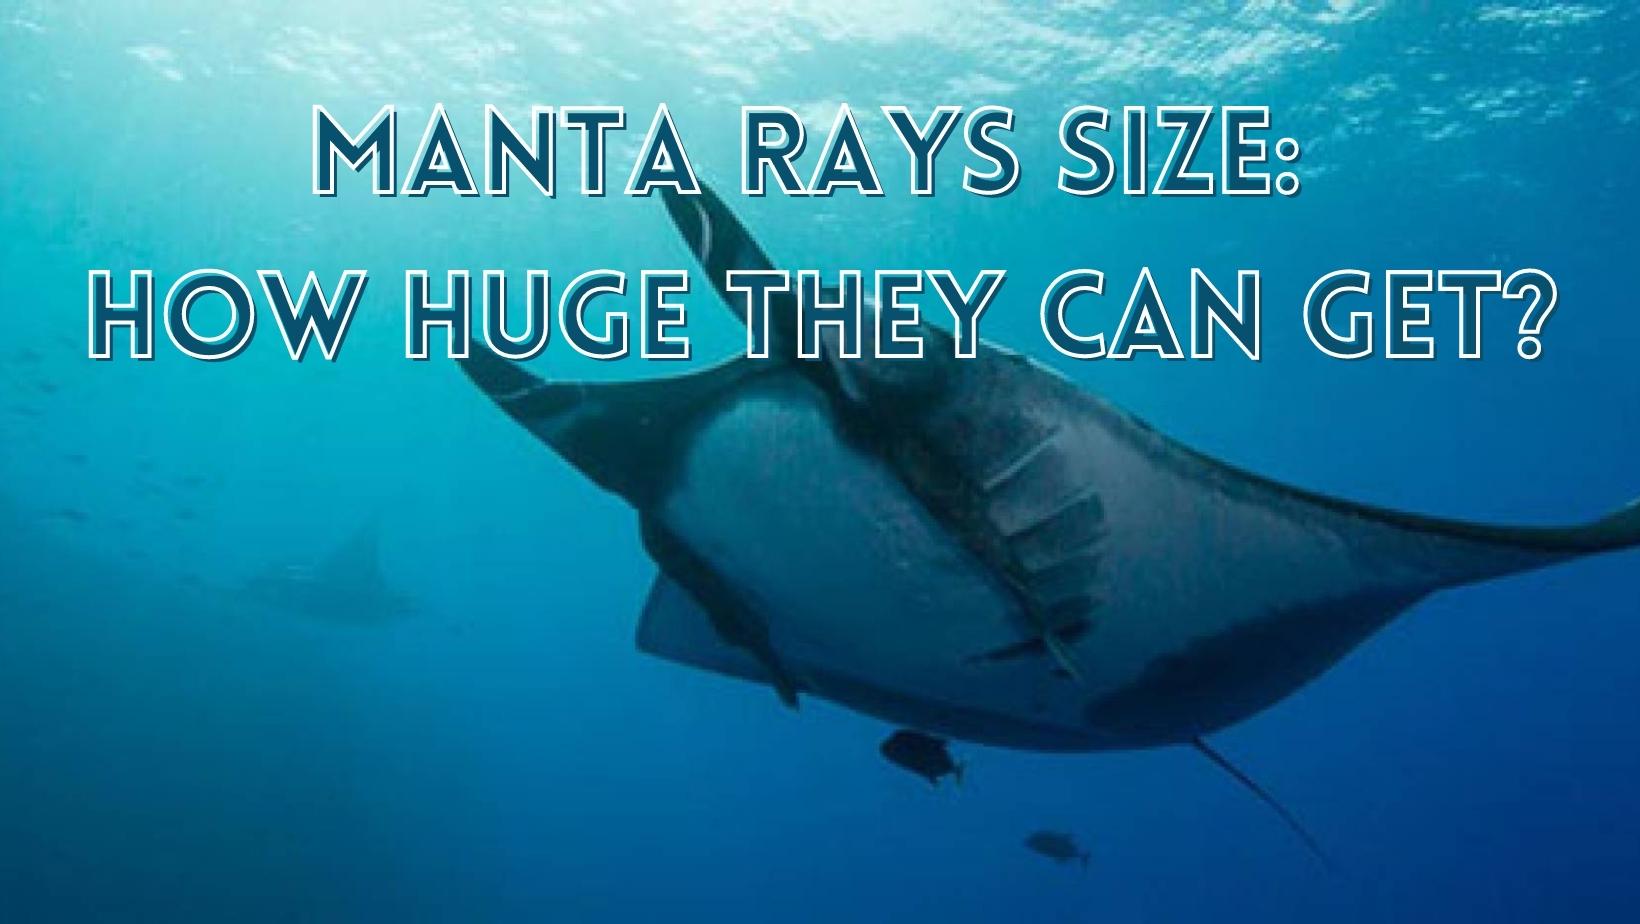 Manta ray size